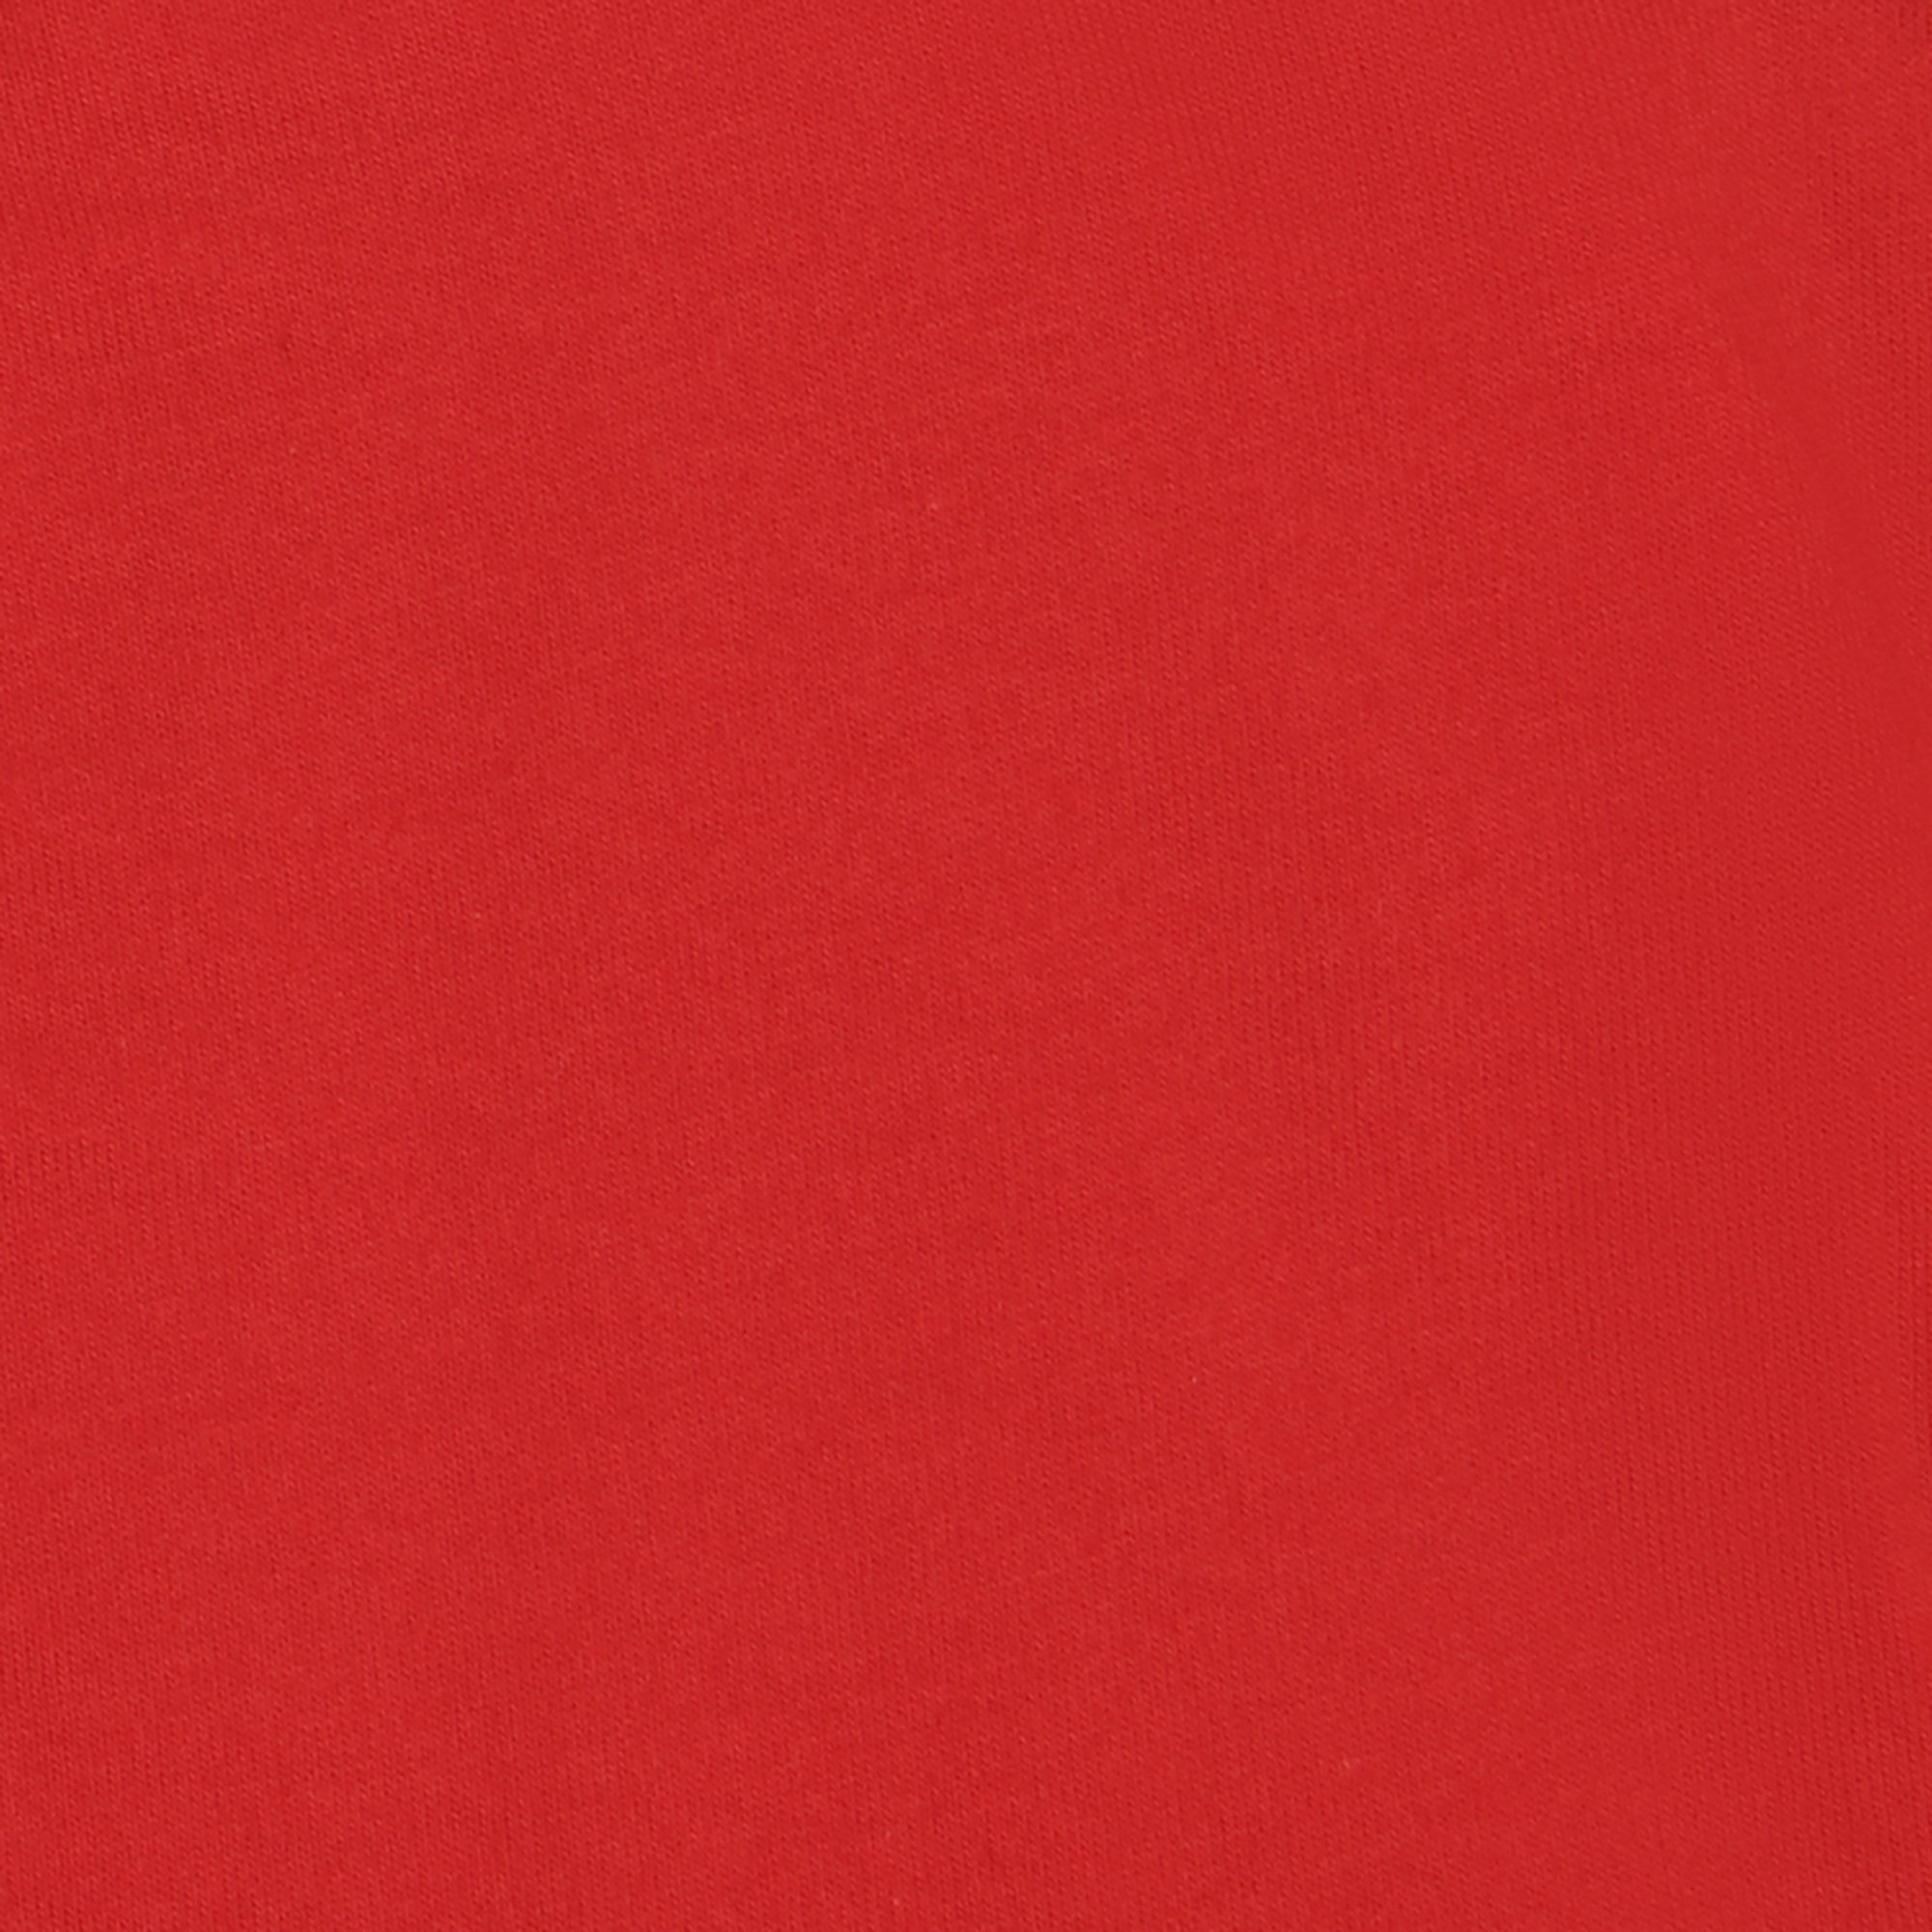 Мужская футболка Pantelemone MF-913 50 красная, цвет красный, размер 50 - фото 3